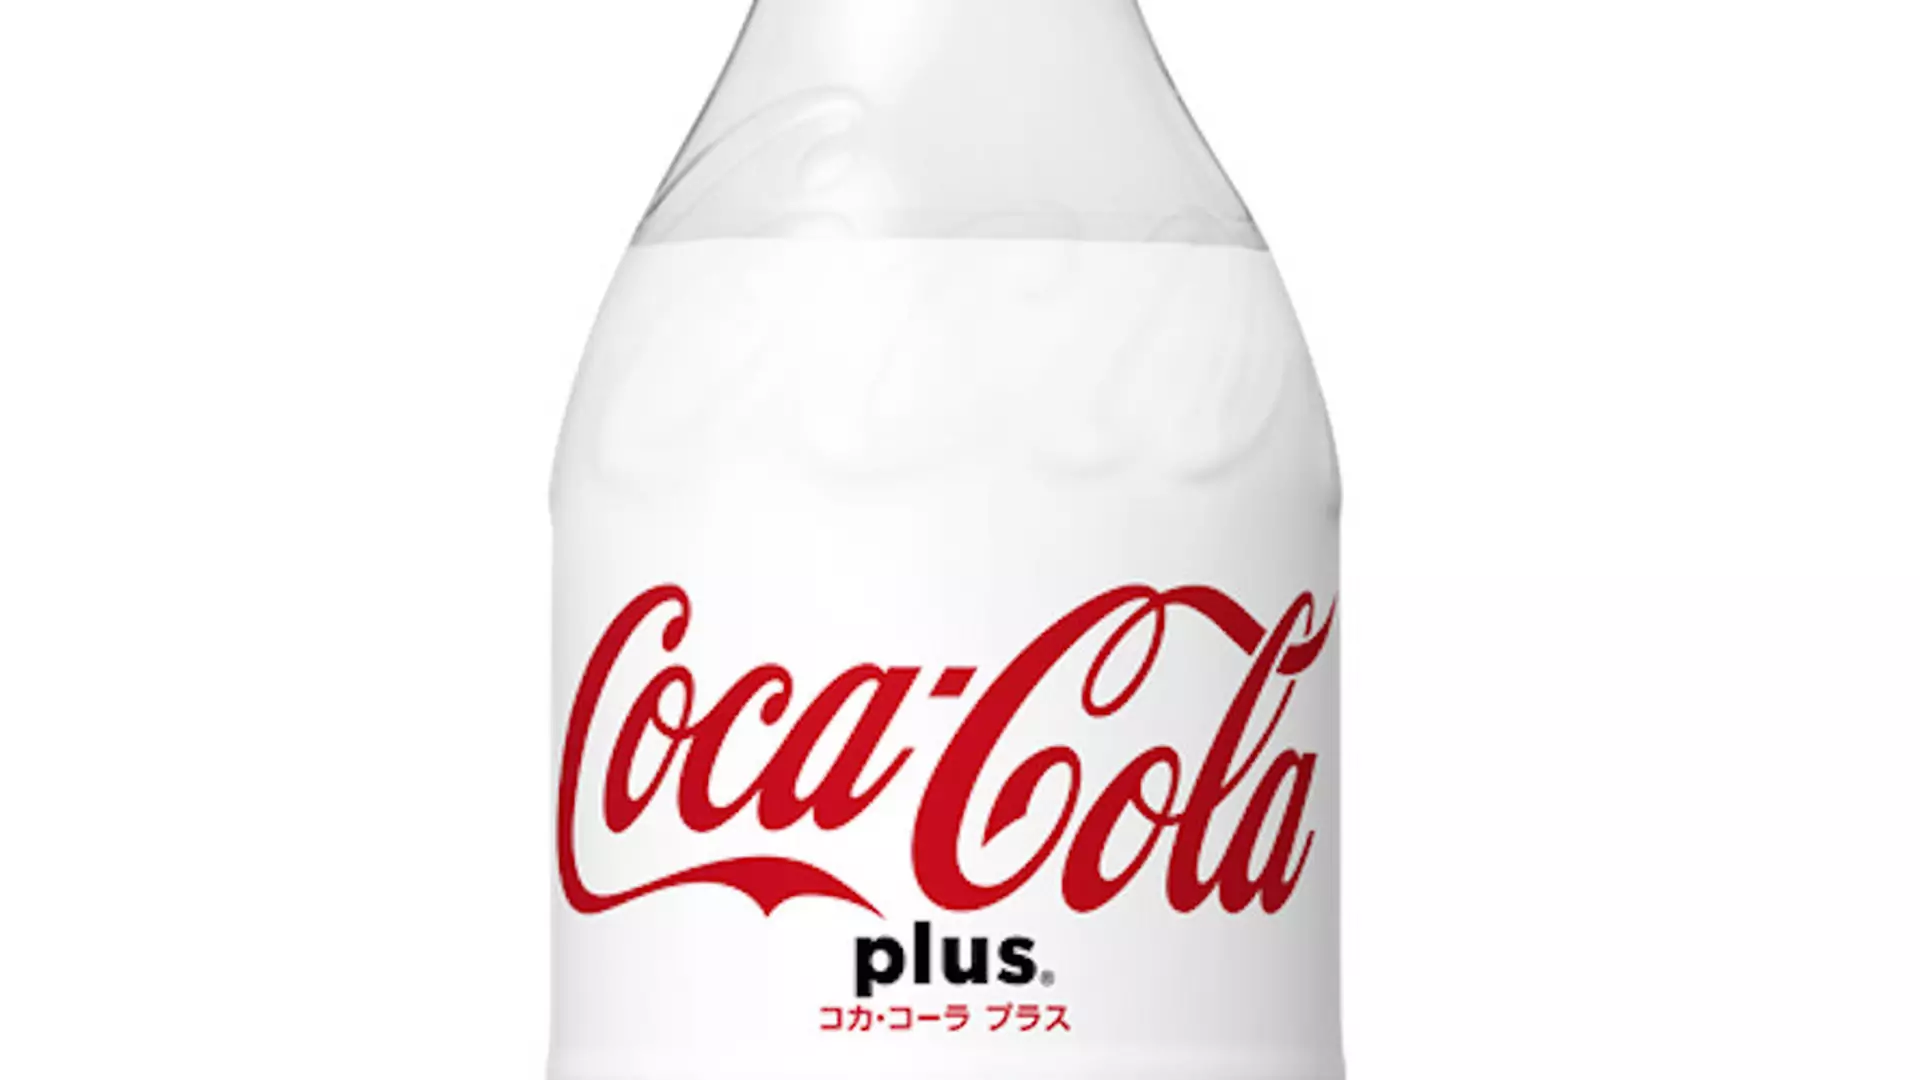 Nowa Coca-Cola będzie zawierała błonnik i ma być najzdrowszą wersją Coli na rynku